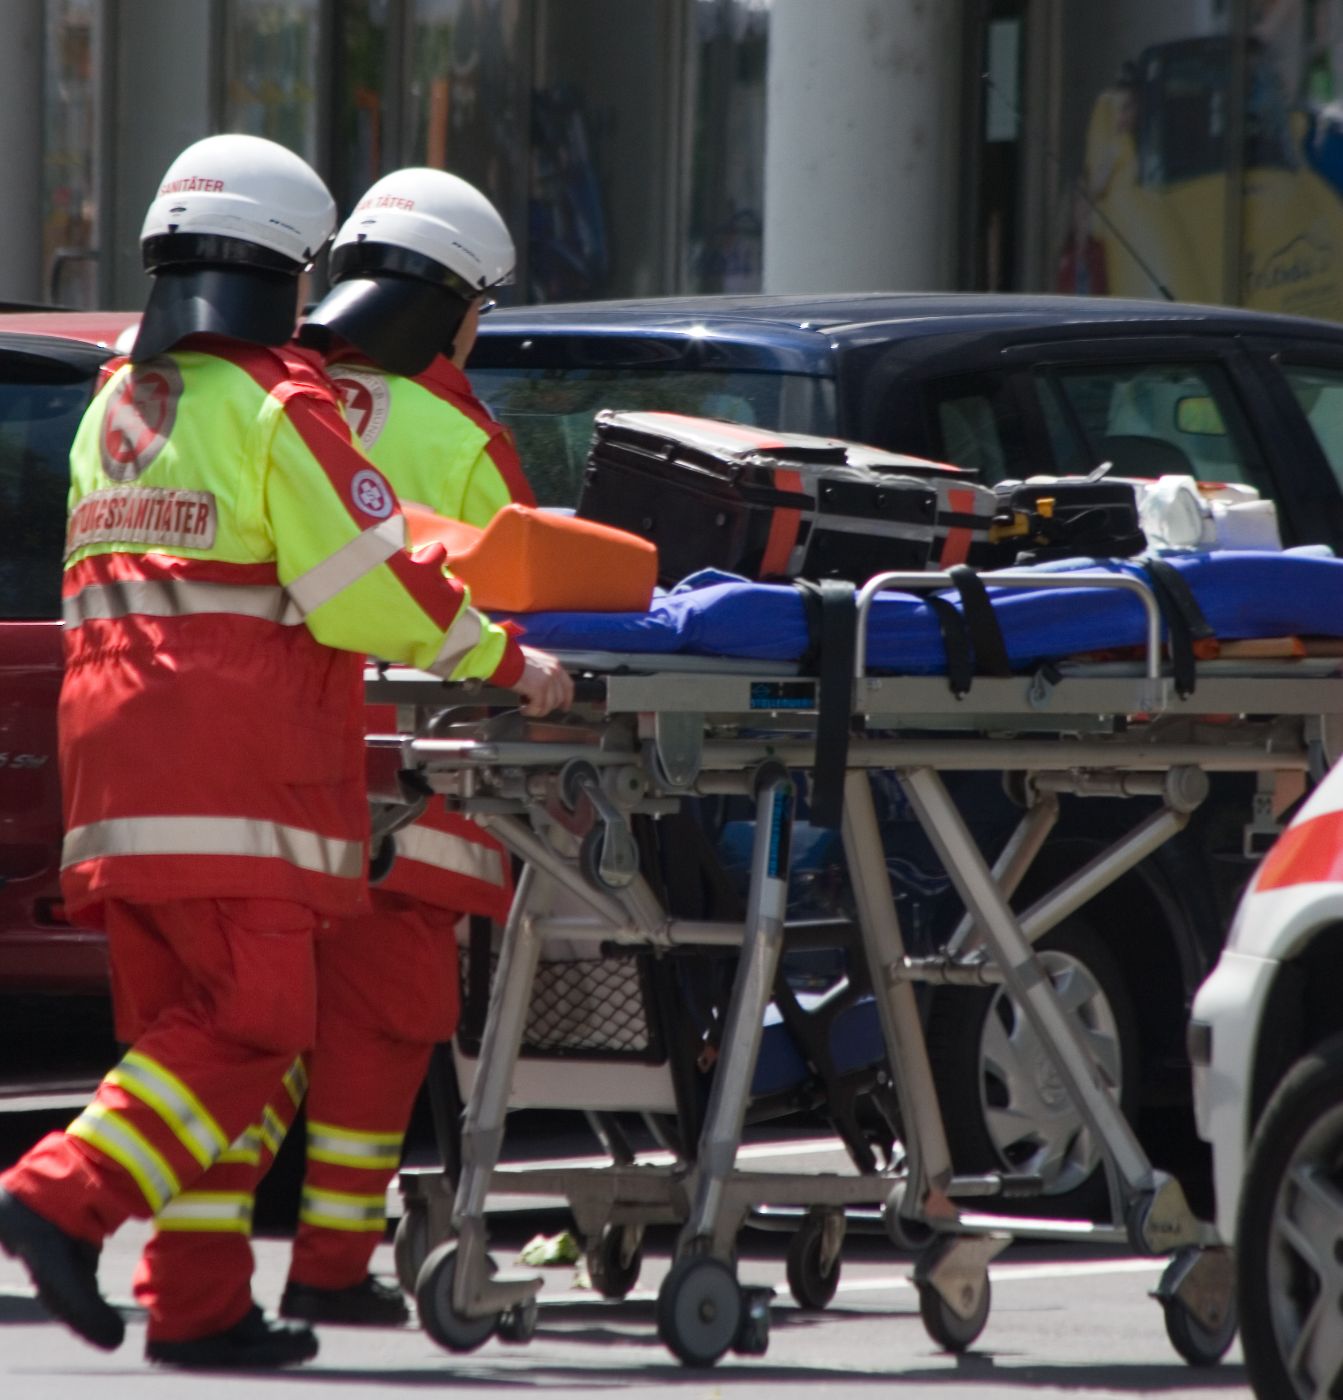 2 Rettungssanitäter in Uniform schieben eine Rettungstrage auf einer Straße